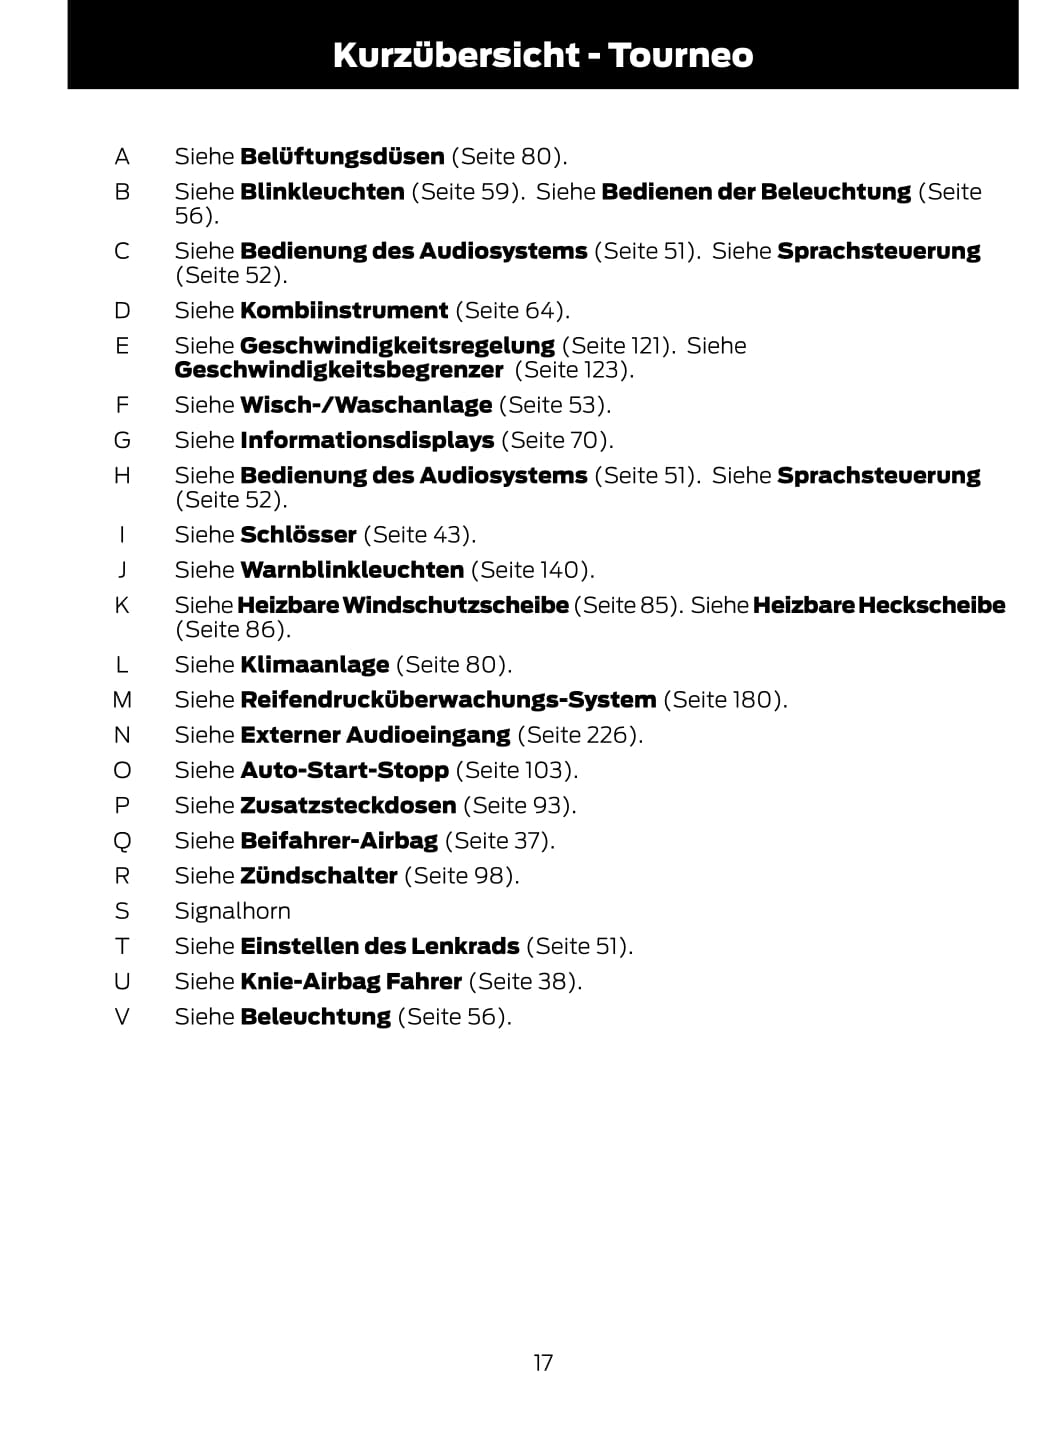 2014-2015 Ford Tourneo Courier / Transit Courier Bedienungsanleitung | Deutsch